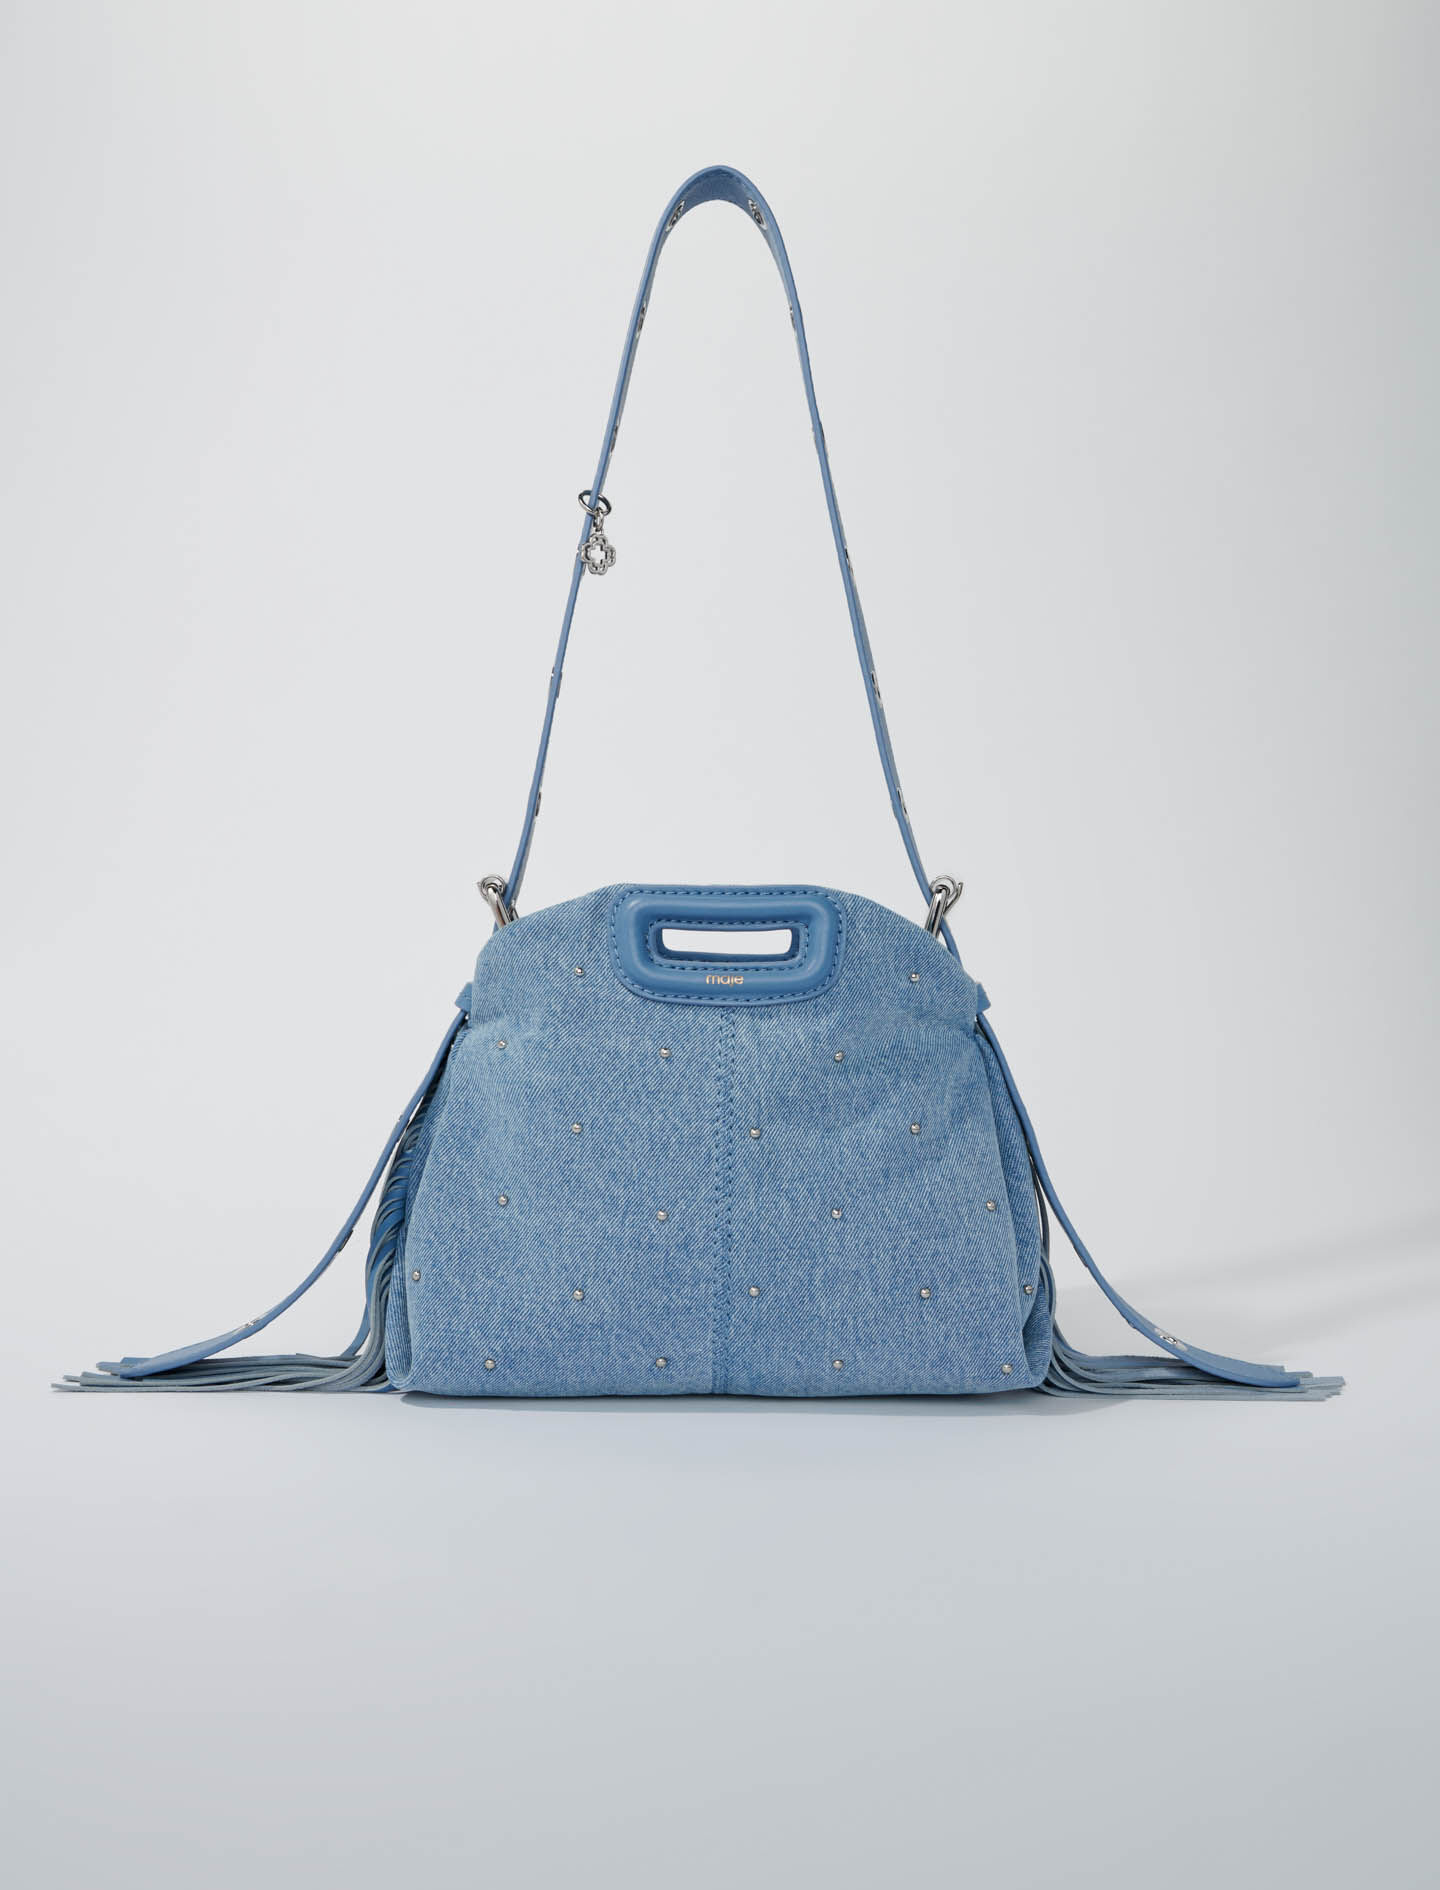 Travel Bags | Peak Design Official Site